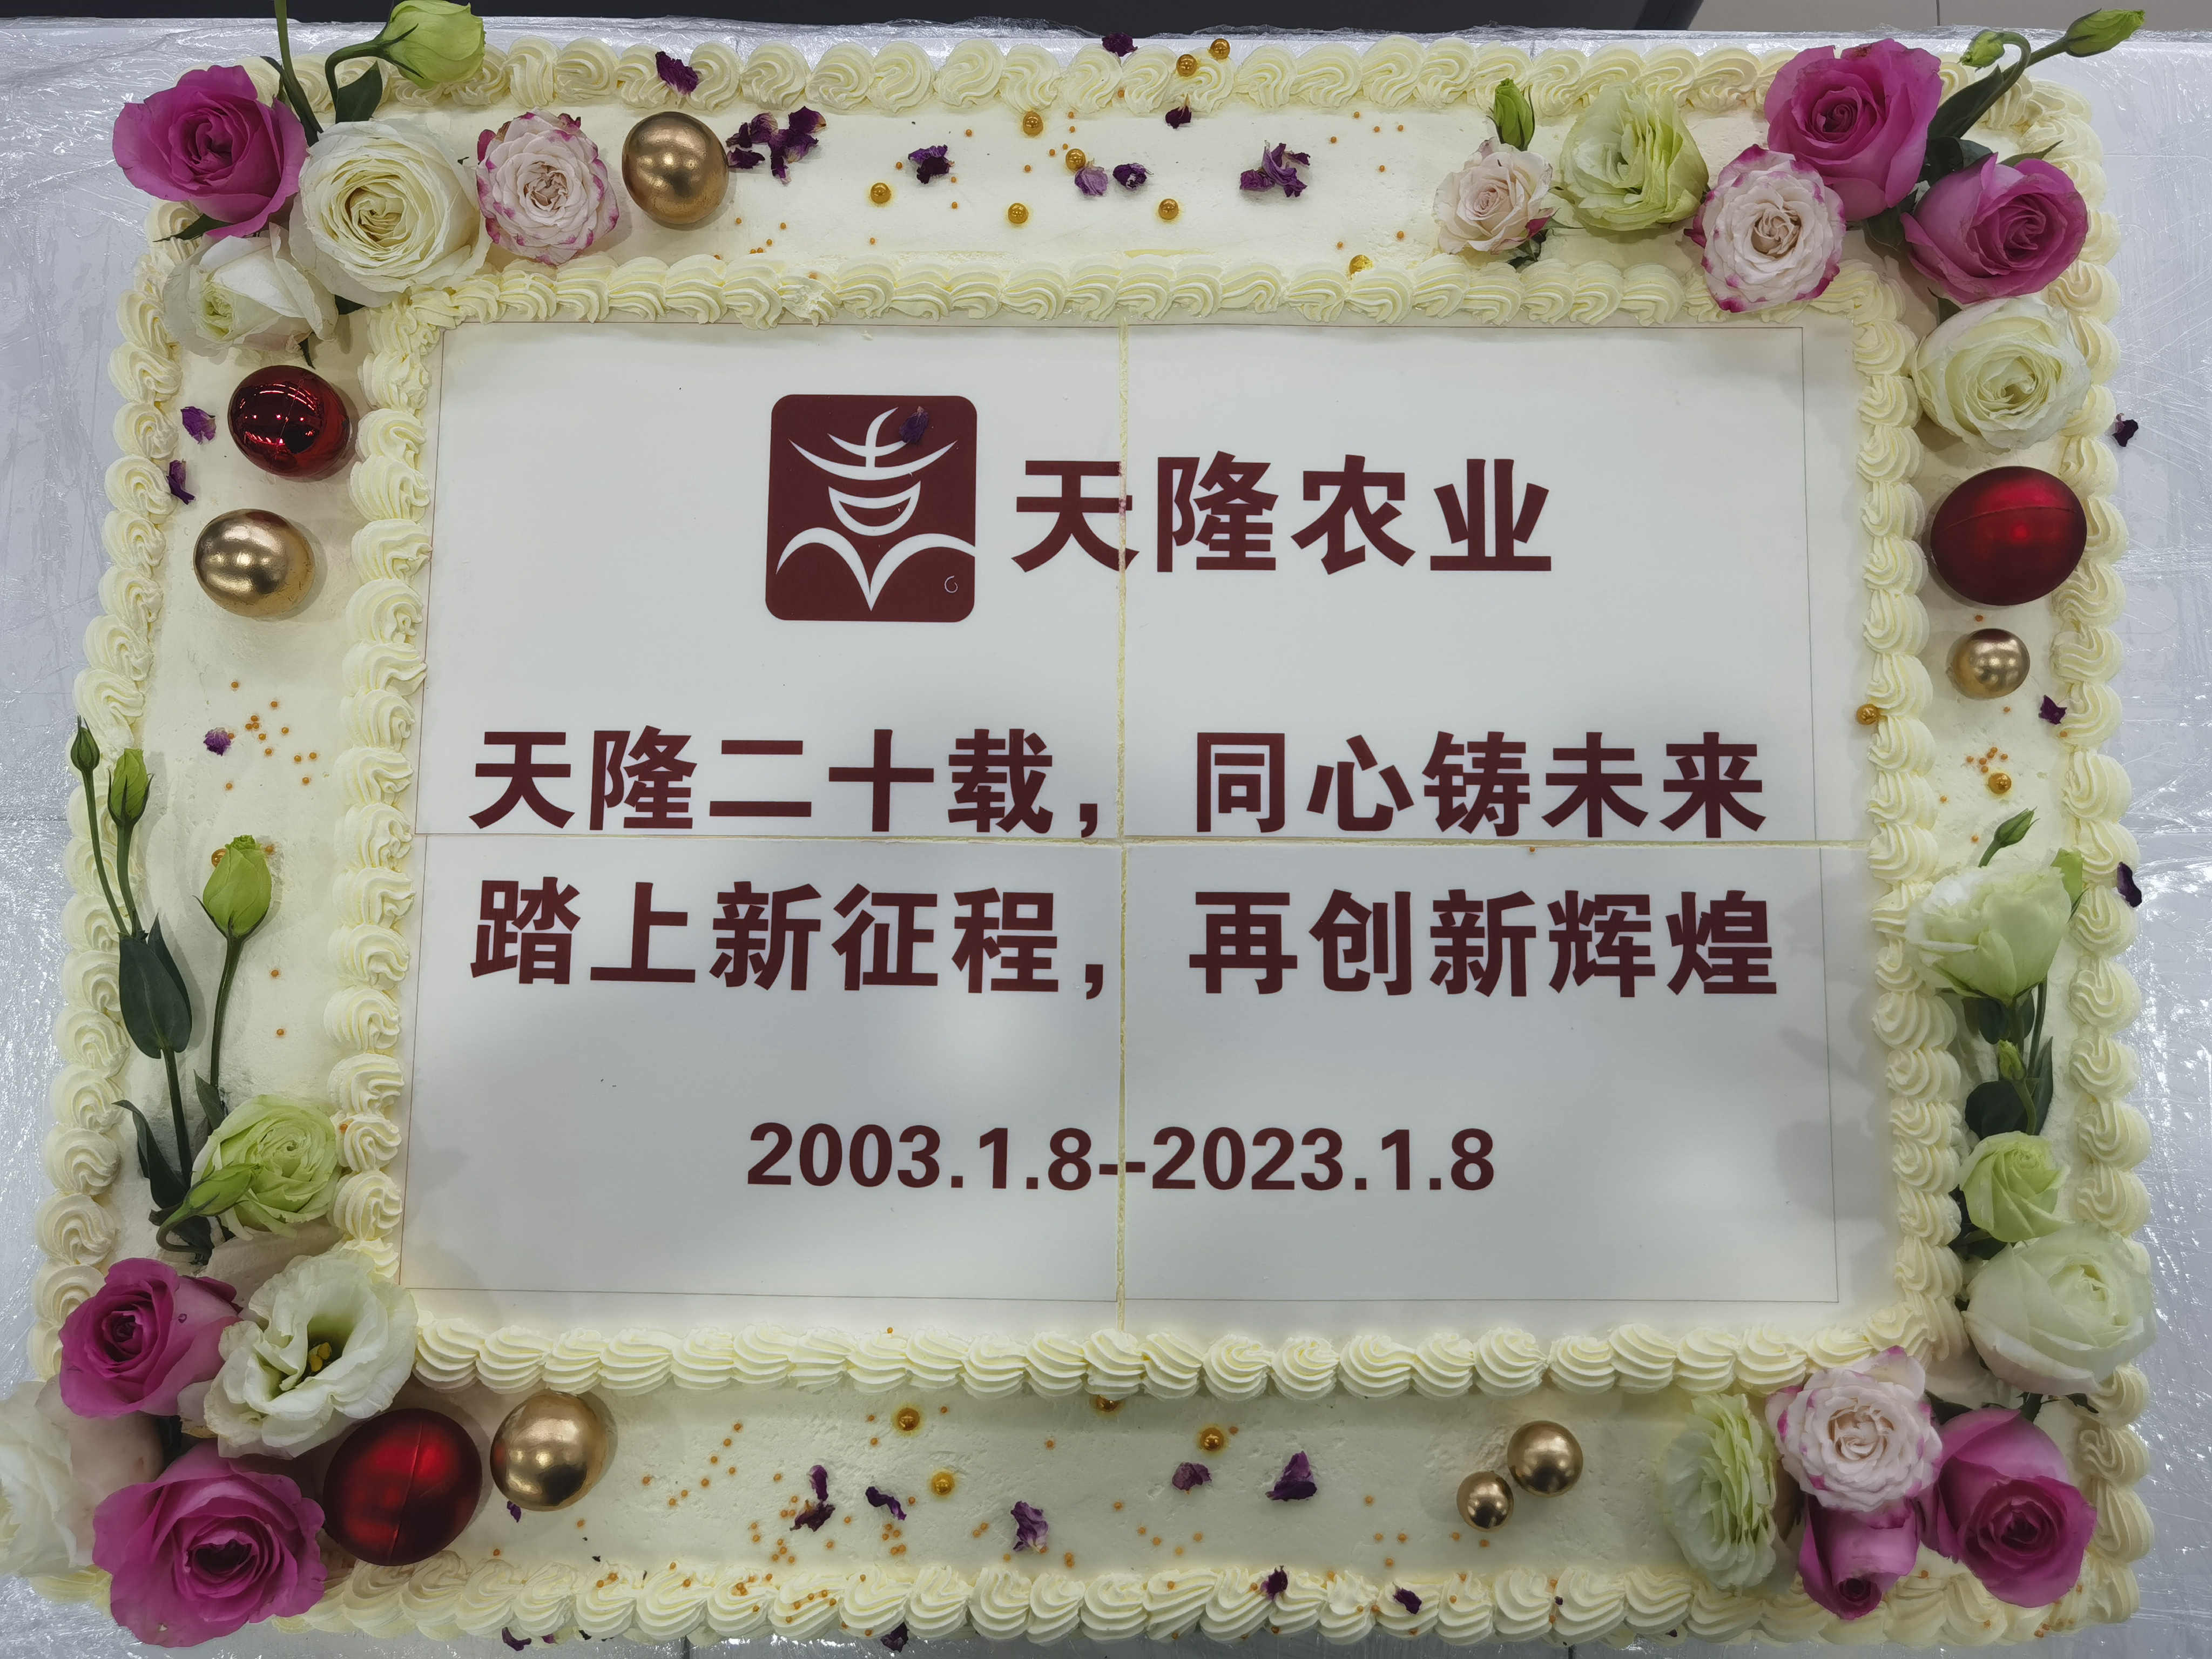 隆重庆贺环球体育网站公司成立20周年